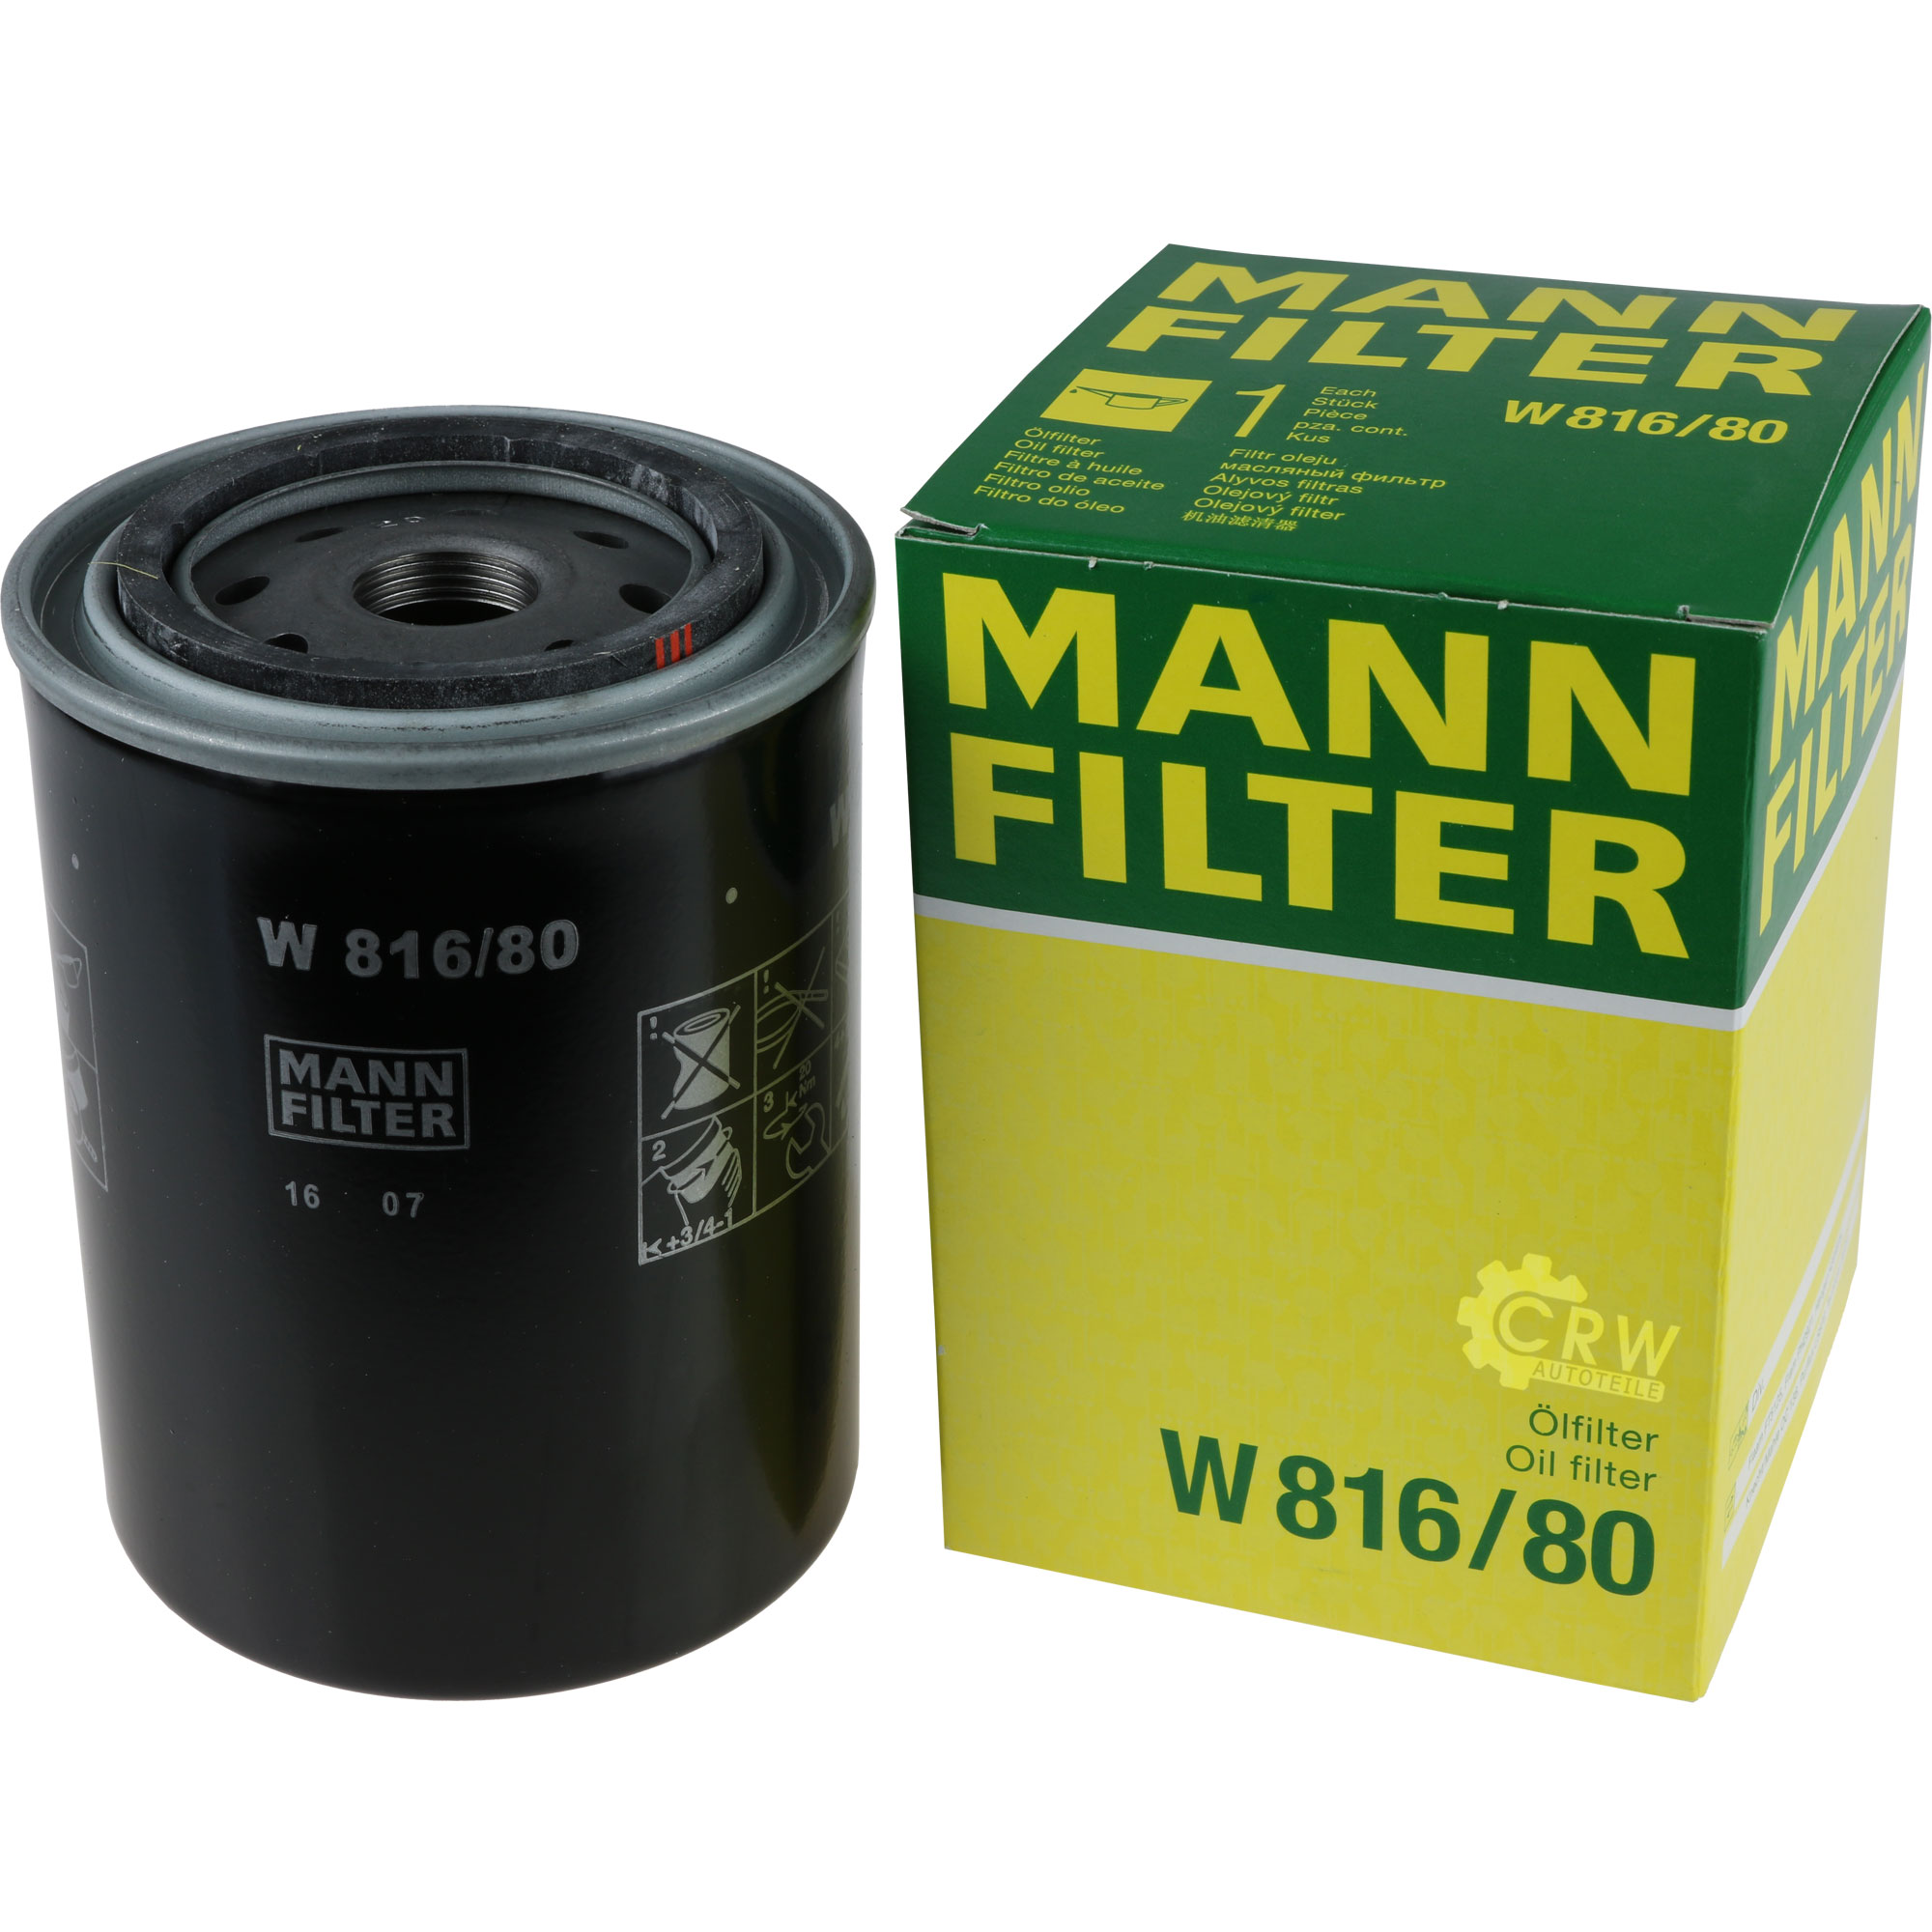 MANN-FILTER Ölfilter W 816/80 Oil Filter